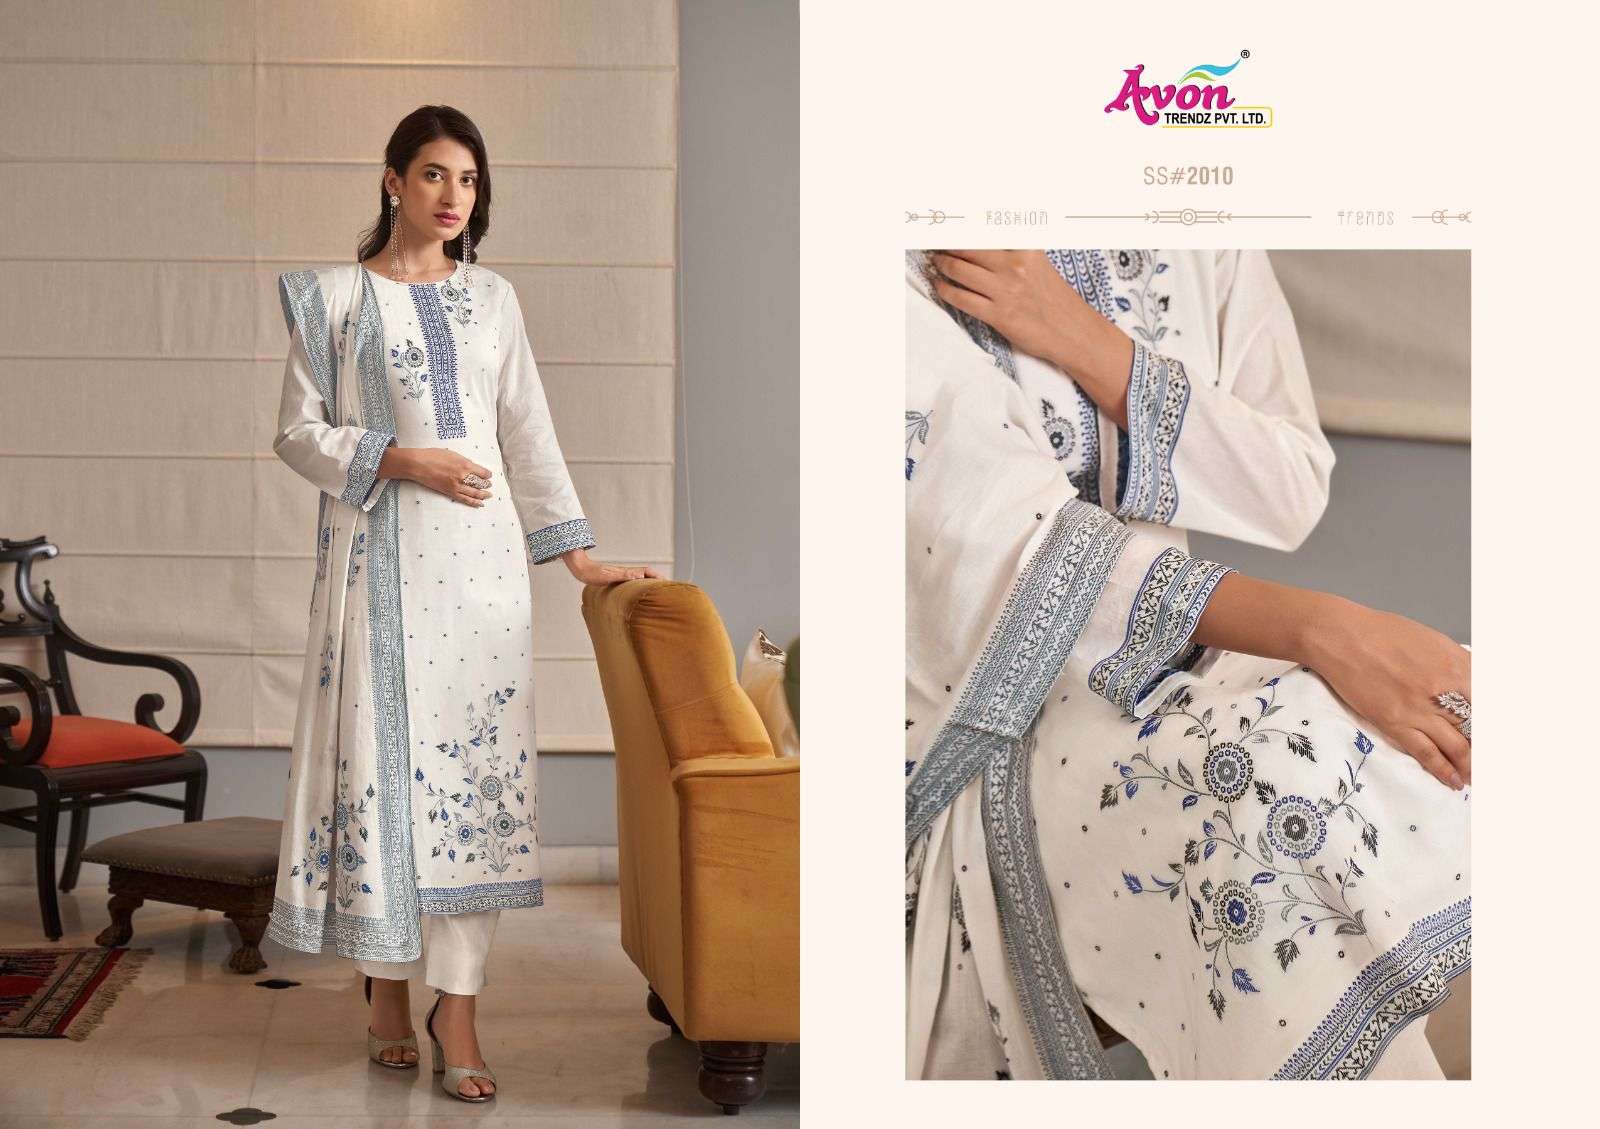 avon trendz summer shades vol-3 2009-2012 series lawn cotton designer salwar kameez catalogue online supplier surat 